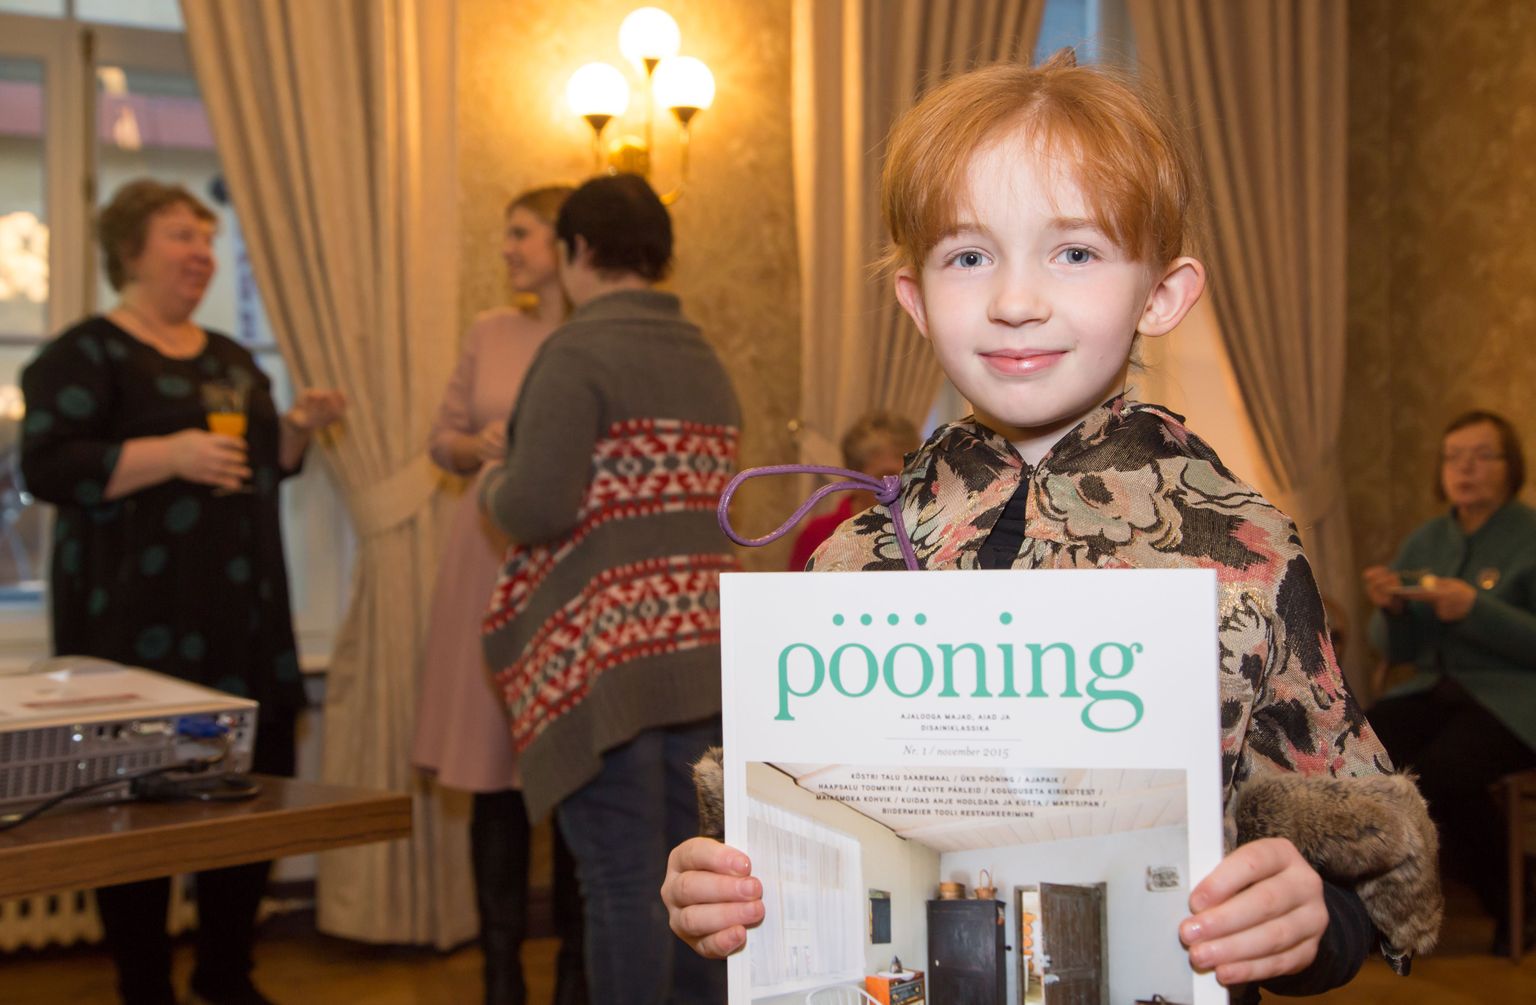 Kohvikus Maiasmokk esitleti novembris uue ajakirja "Pööning" esimest numbrit. Toimetajad Karola Mursu ja Heli Nurger tagaplaanil. Heli tütar Leele (8) on ajakirja nime autor.